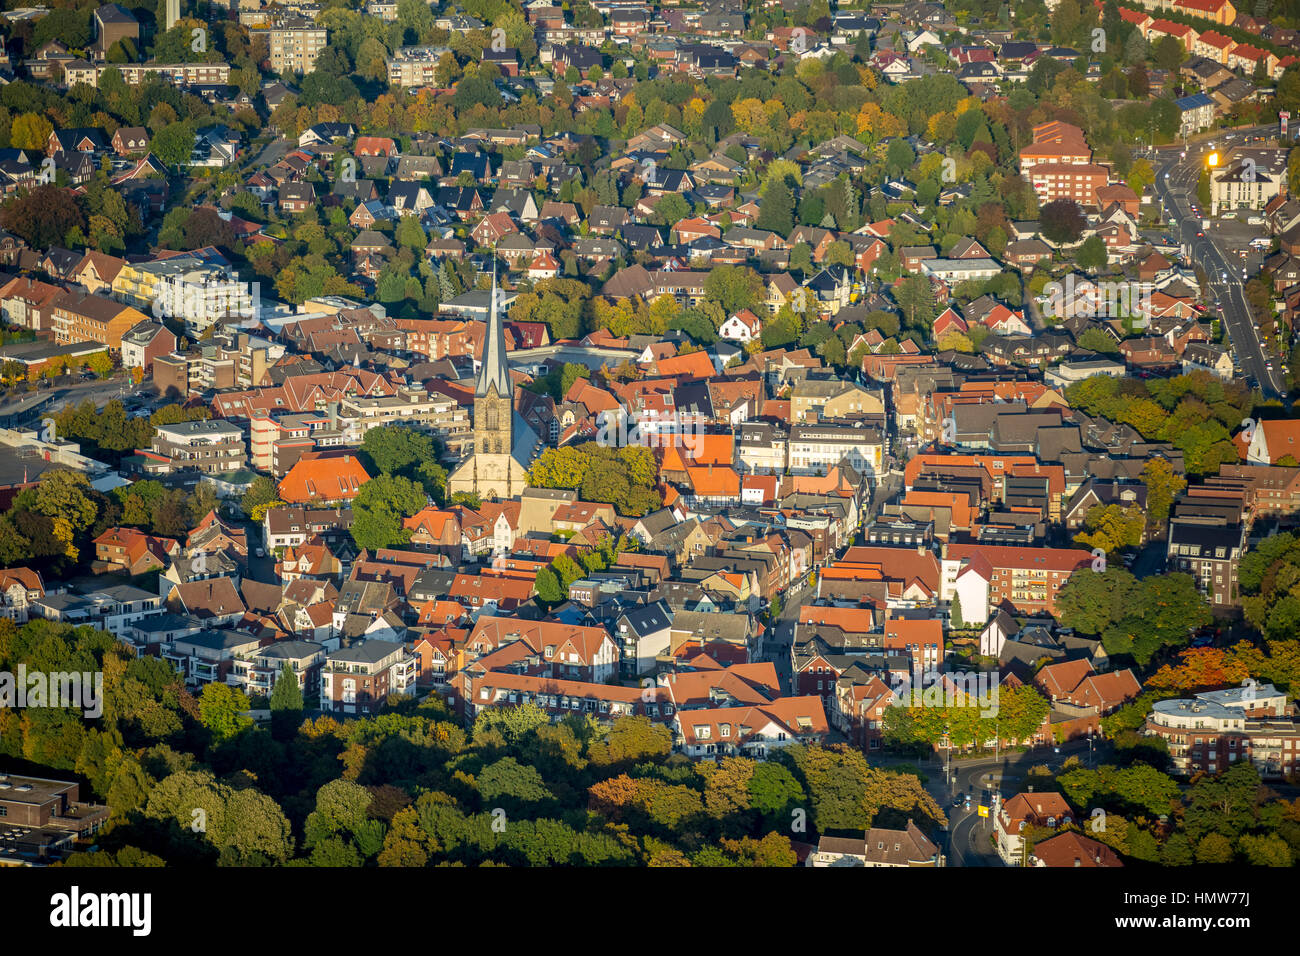 Centro histórico de la ciudad, vista aérea de Werne Werne, districto de Ruhr, Renania del Norte-Westfalia, Alemania Foto de stock